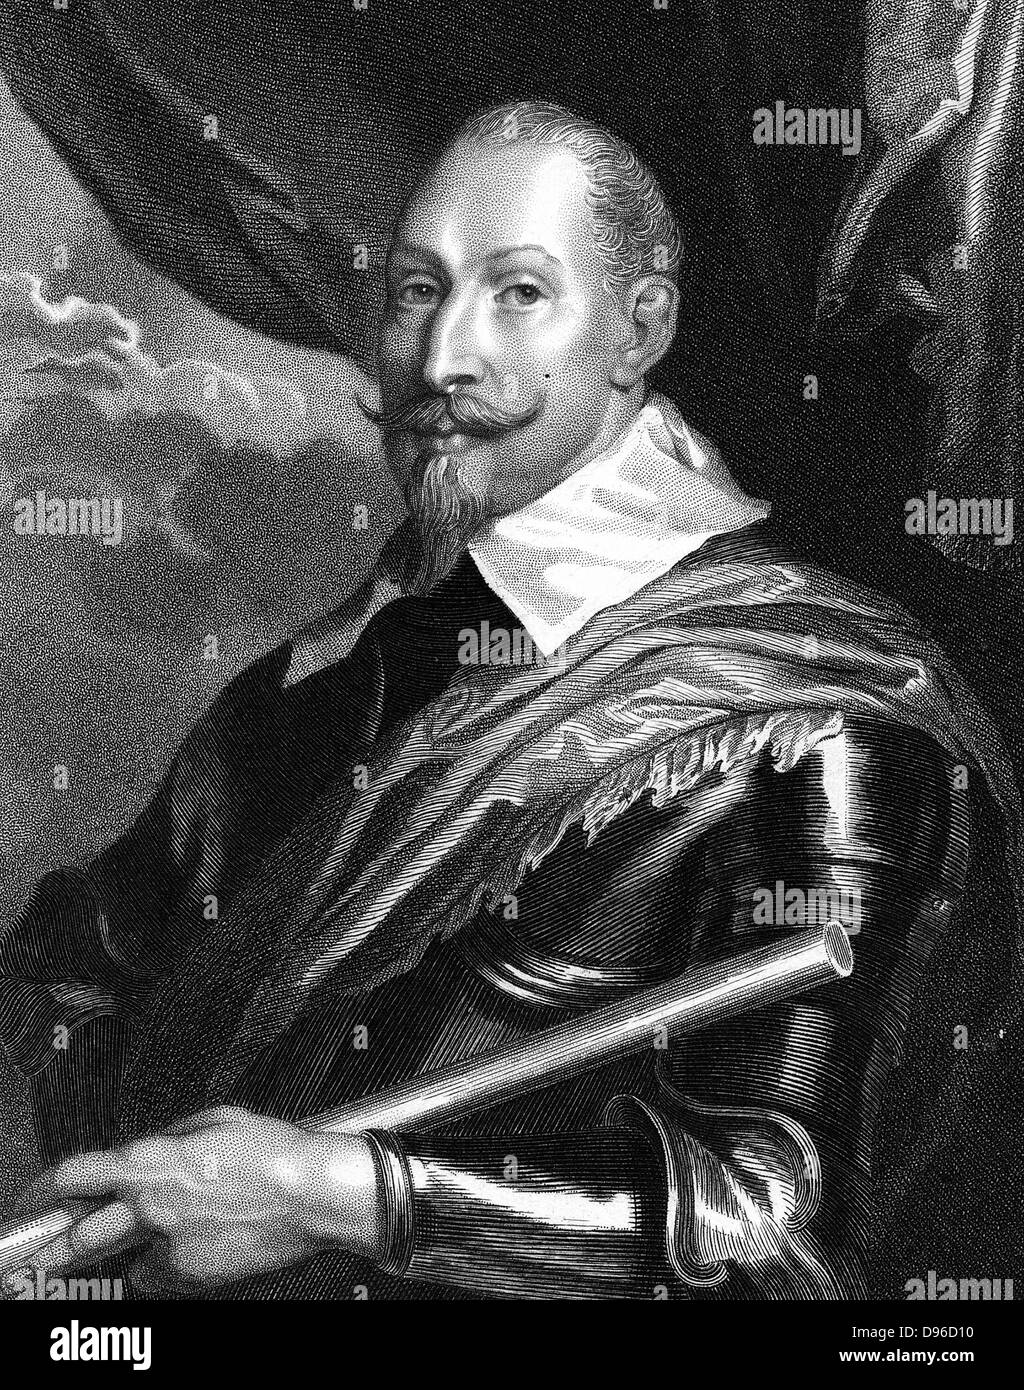 Gustav II Adolf Gustavus Adolphus (1594-1632) König von Schweden von 1611. Führer der Protestanten im 30-jährigen Krieg. Gravur nach Portrait von Van Dyck (Van Dyke). Stockfoto